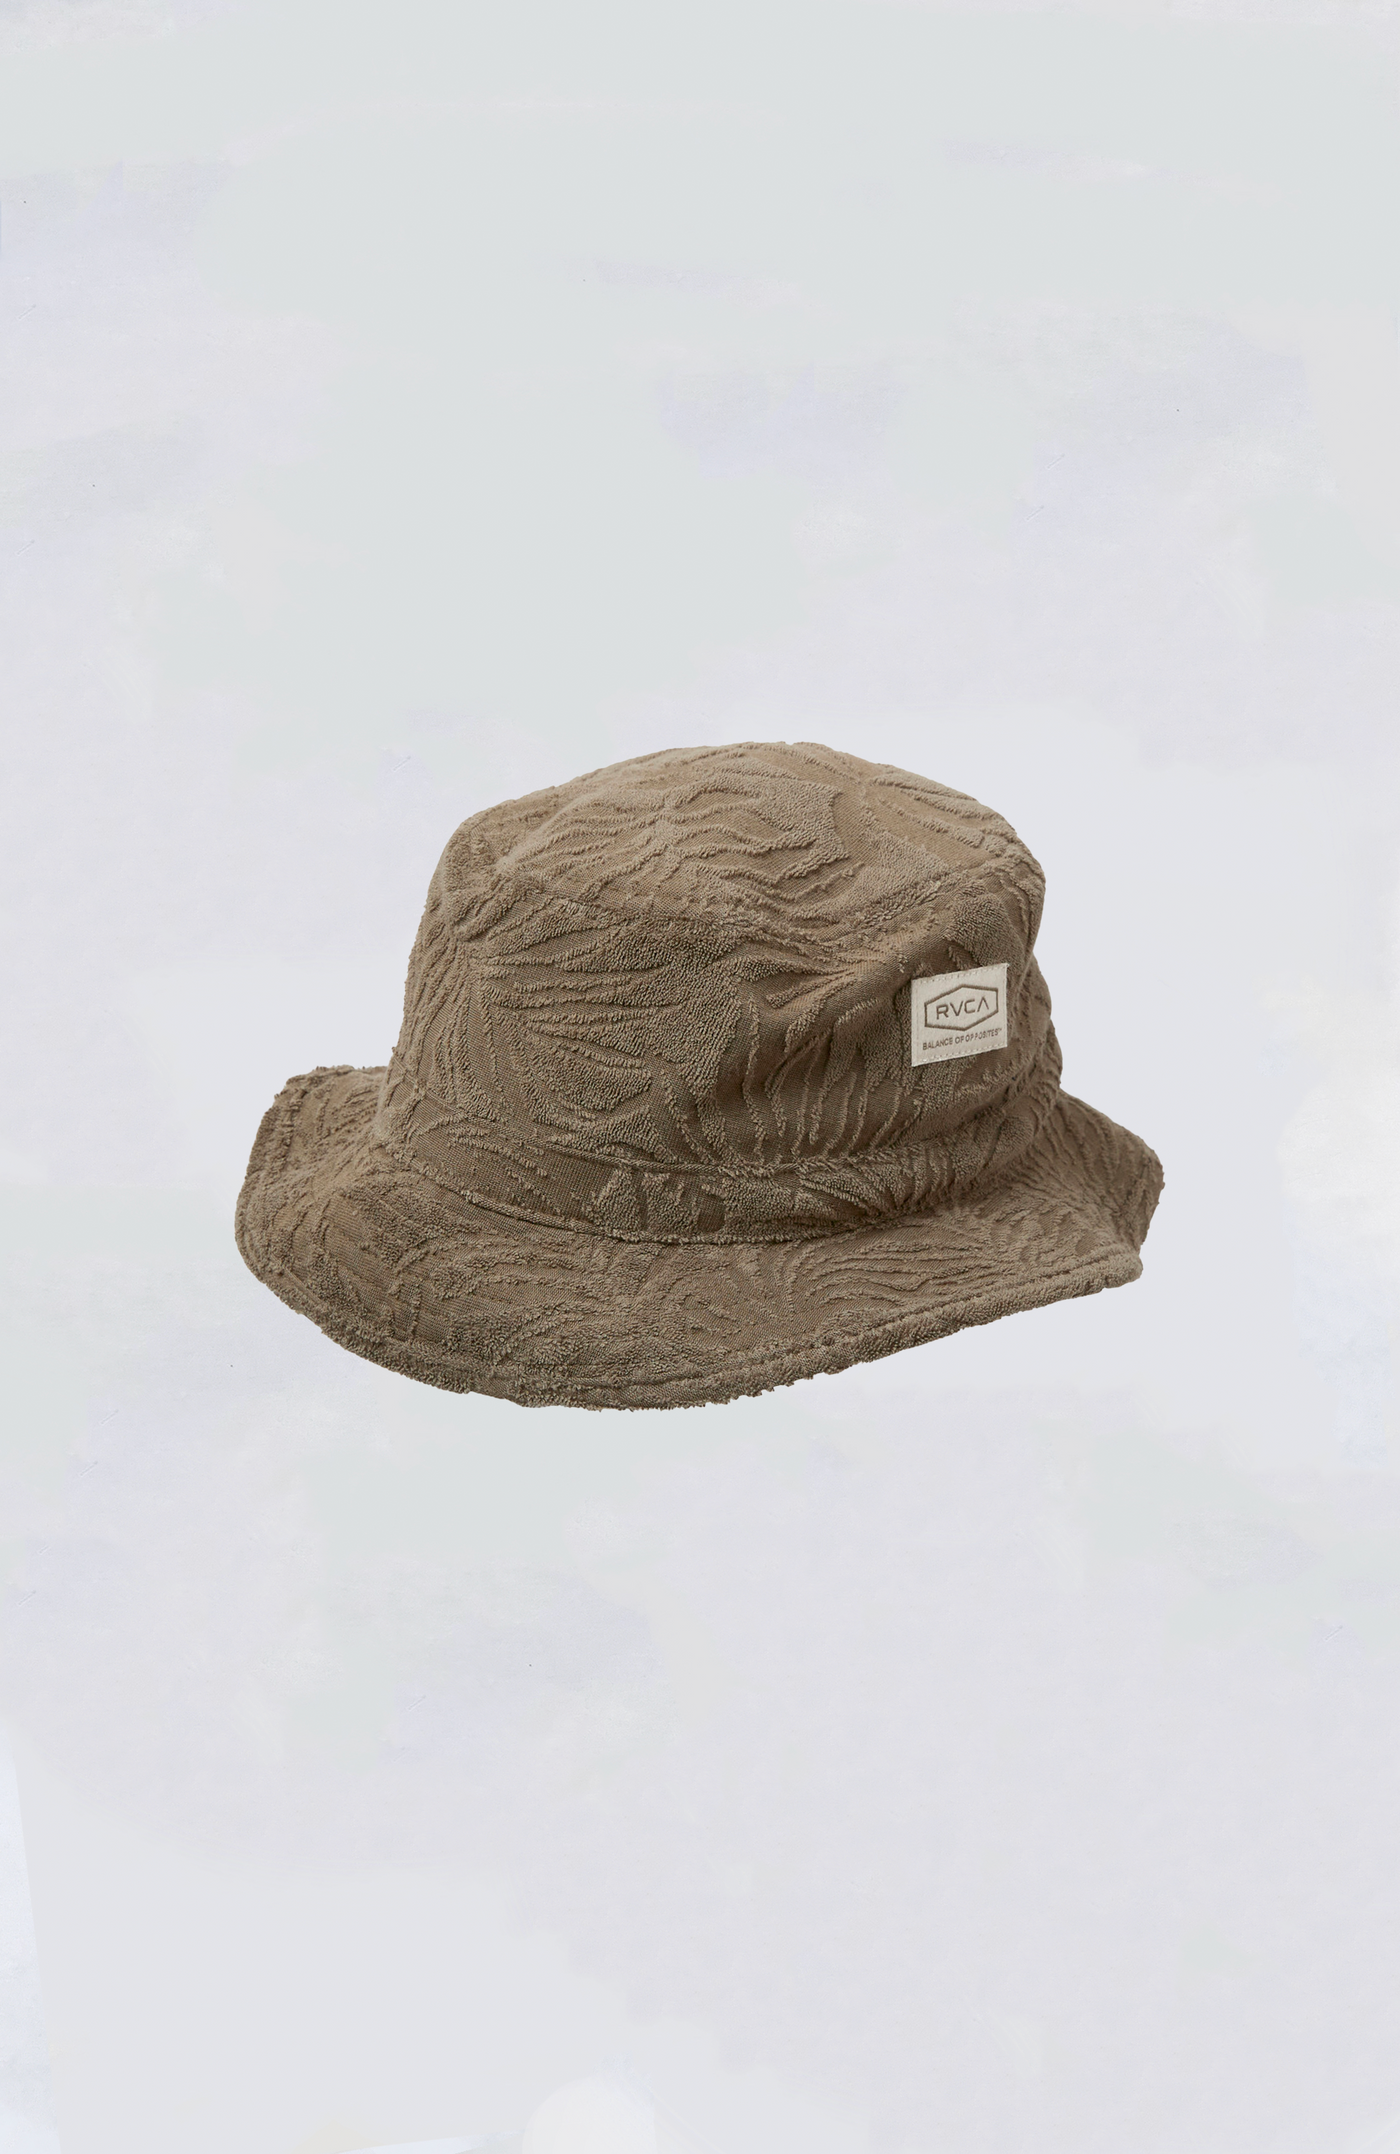 RVCA - Palms Down Bucket Hat